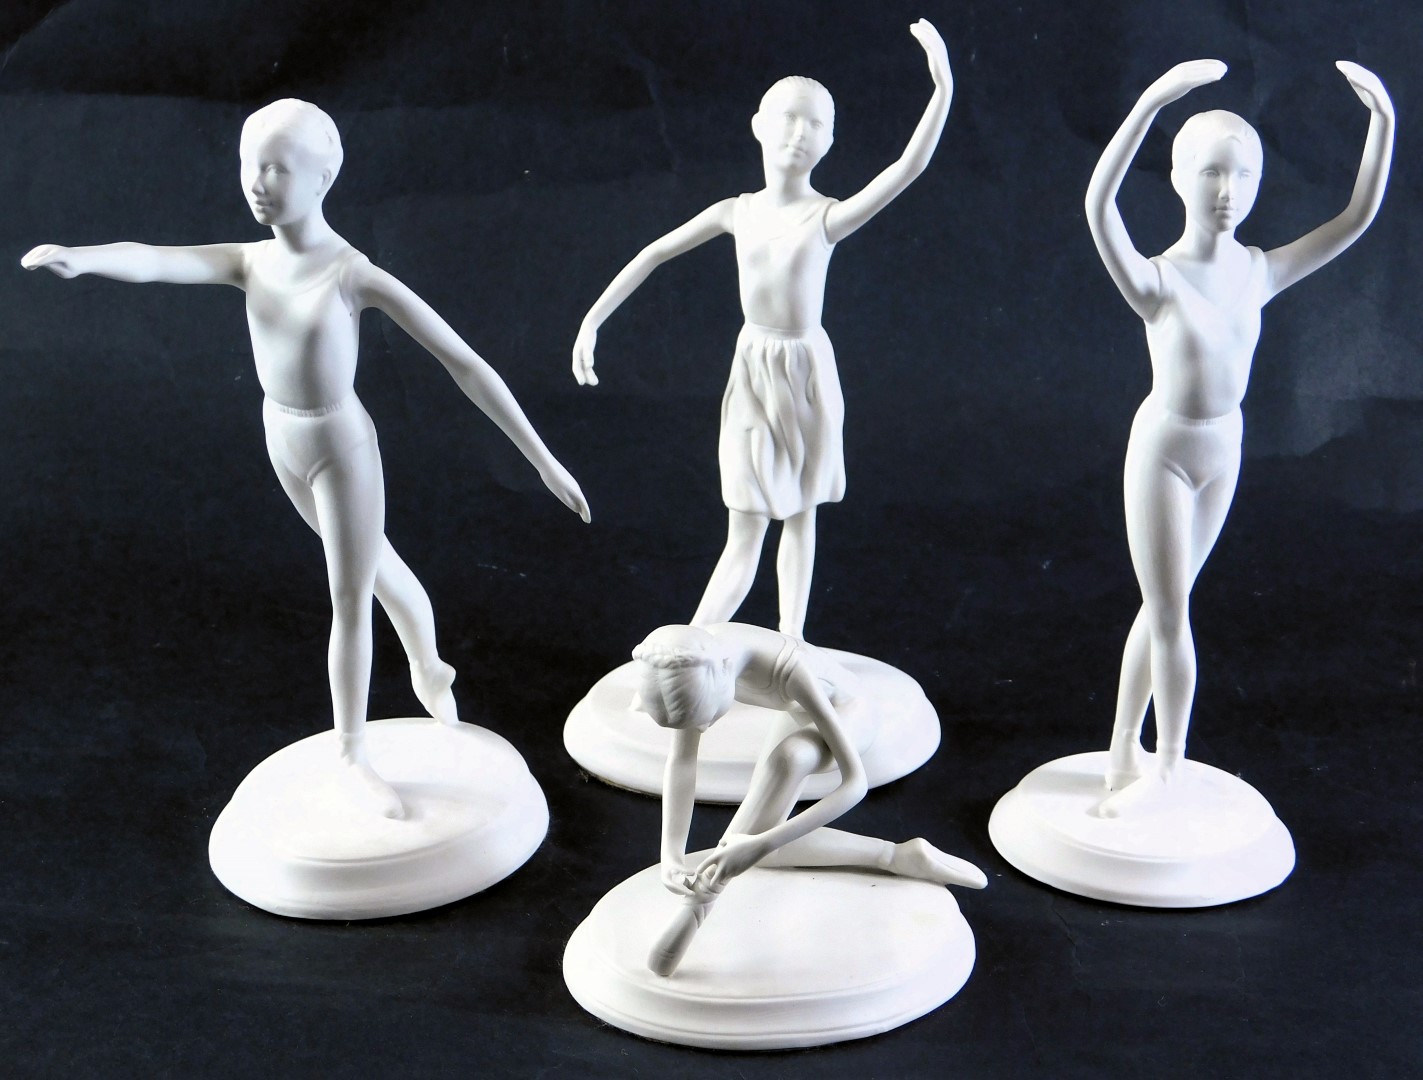 Four Franklin porcelain Royal Ballet figures, designed by Brenda Naylor, the tallest 20cm high.